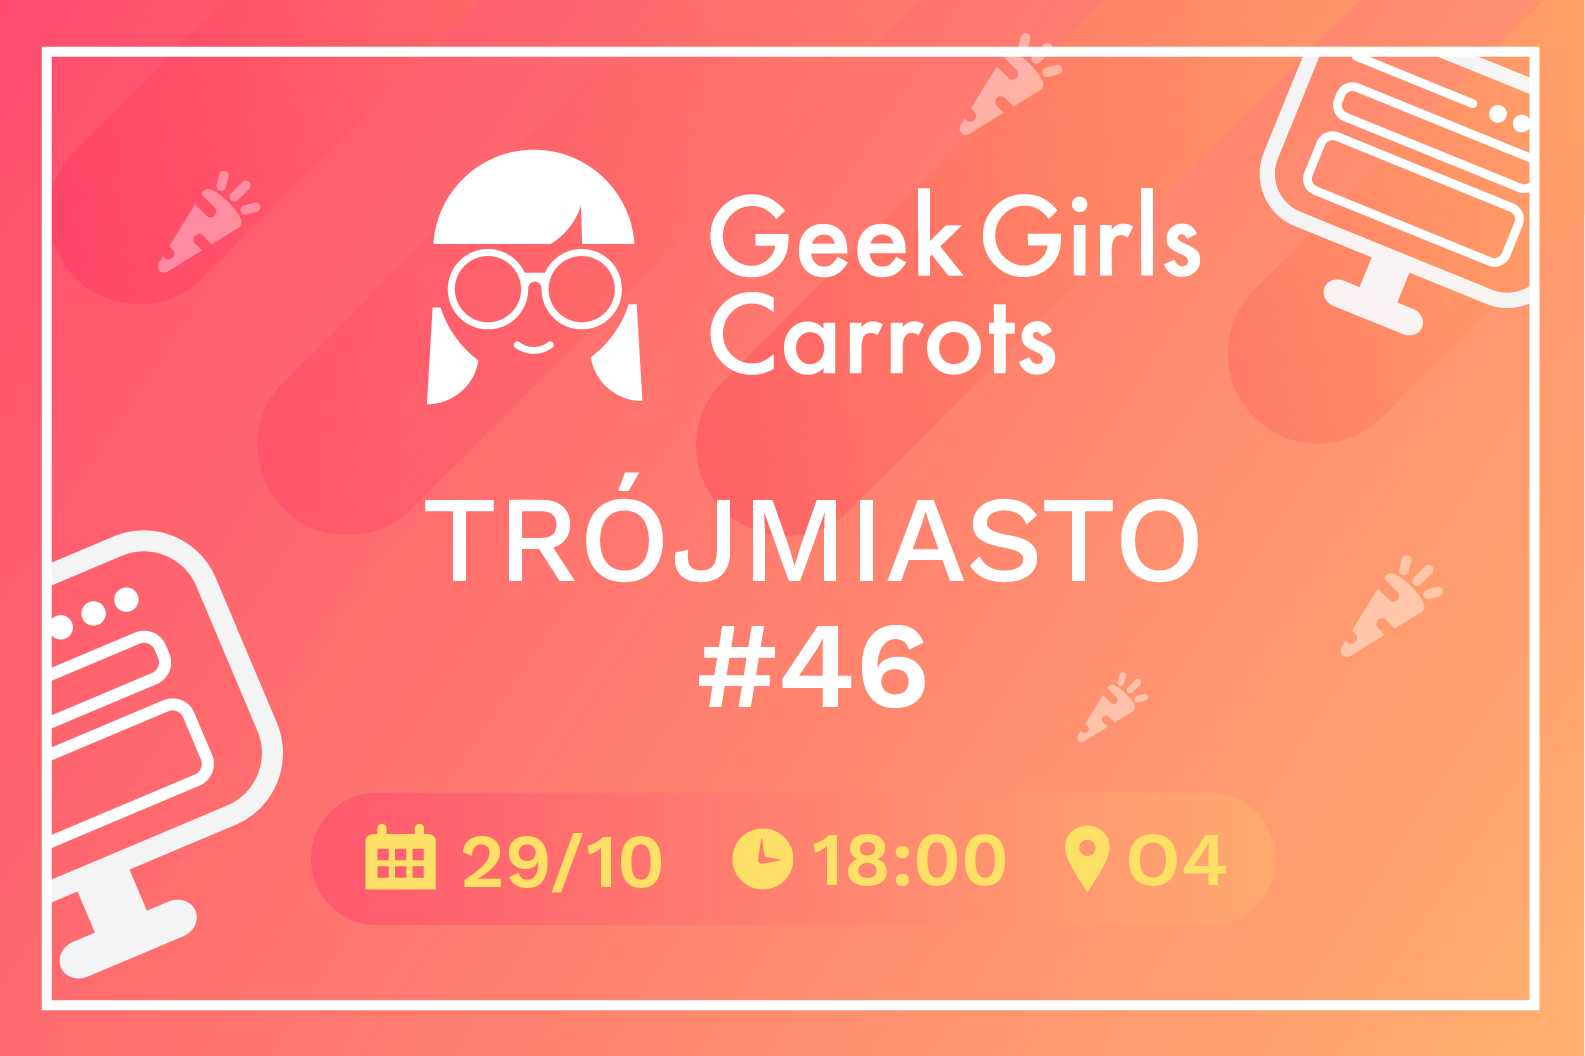 geek-girls-carrots-trojmiasto-46